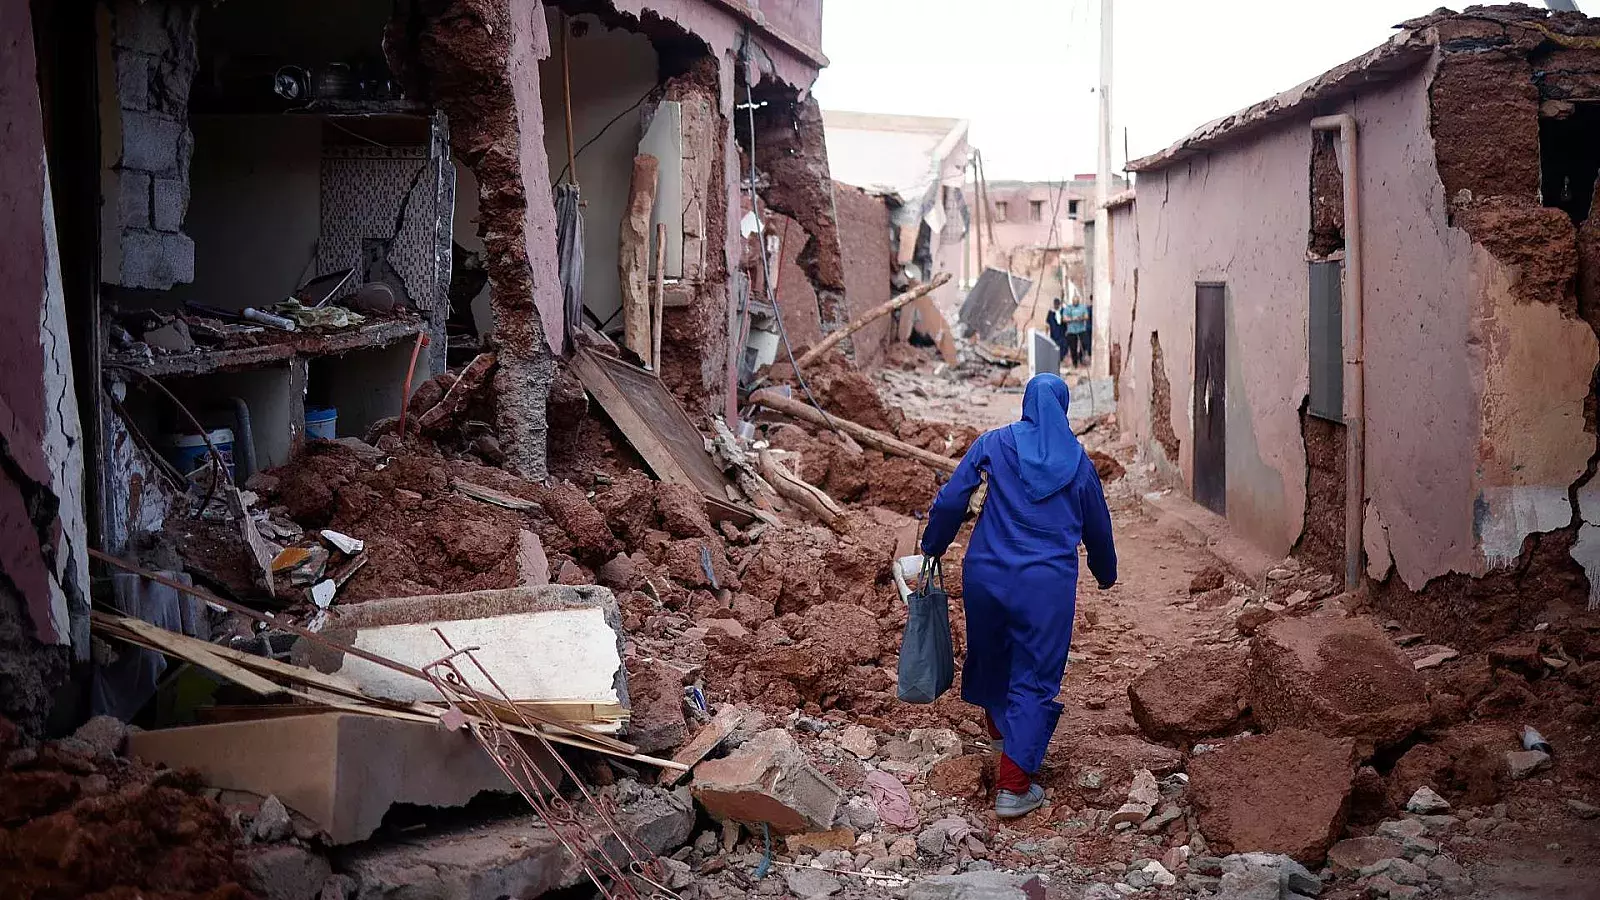 El número de muertos por el terremoto de Marruecos supera los 2.000